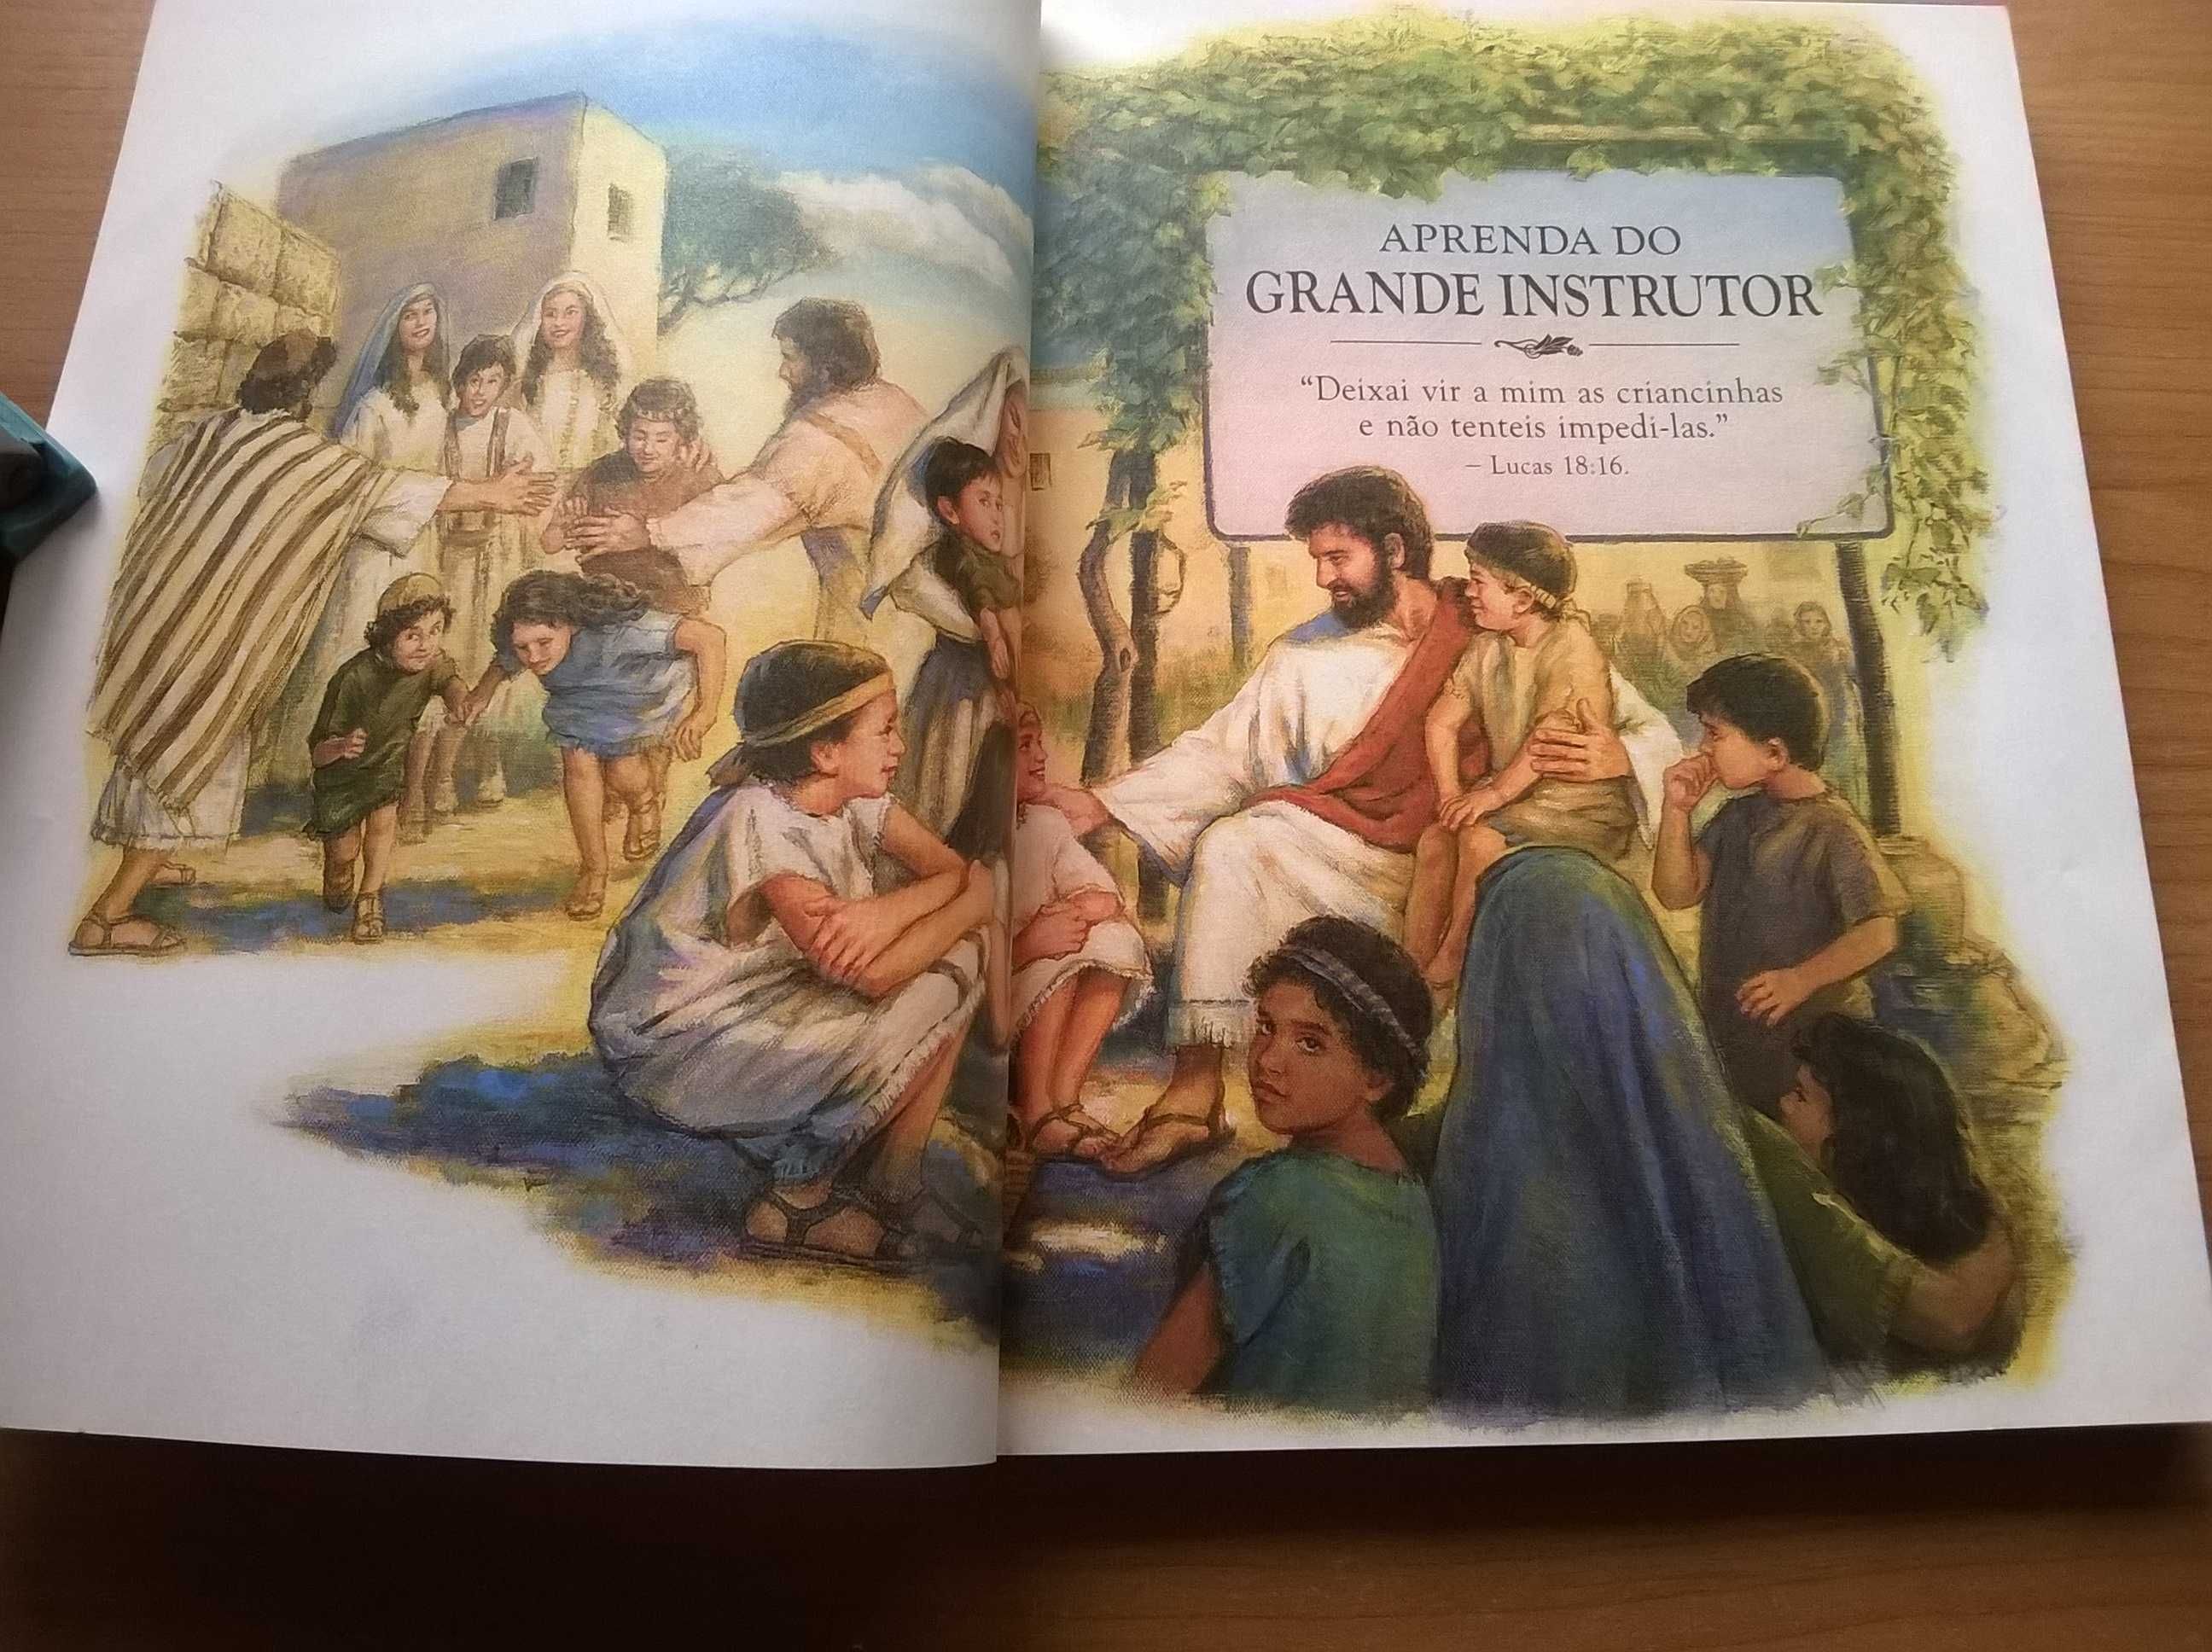 Aprenda do Grande Instrutor - Impressão de 1992, Brasil